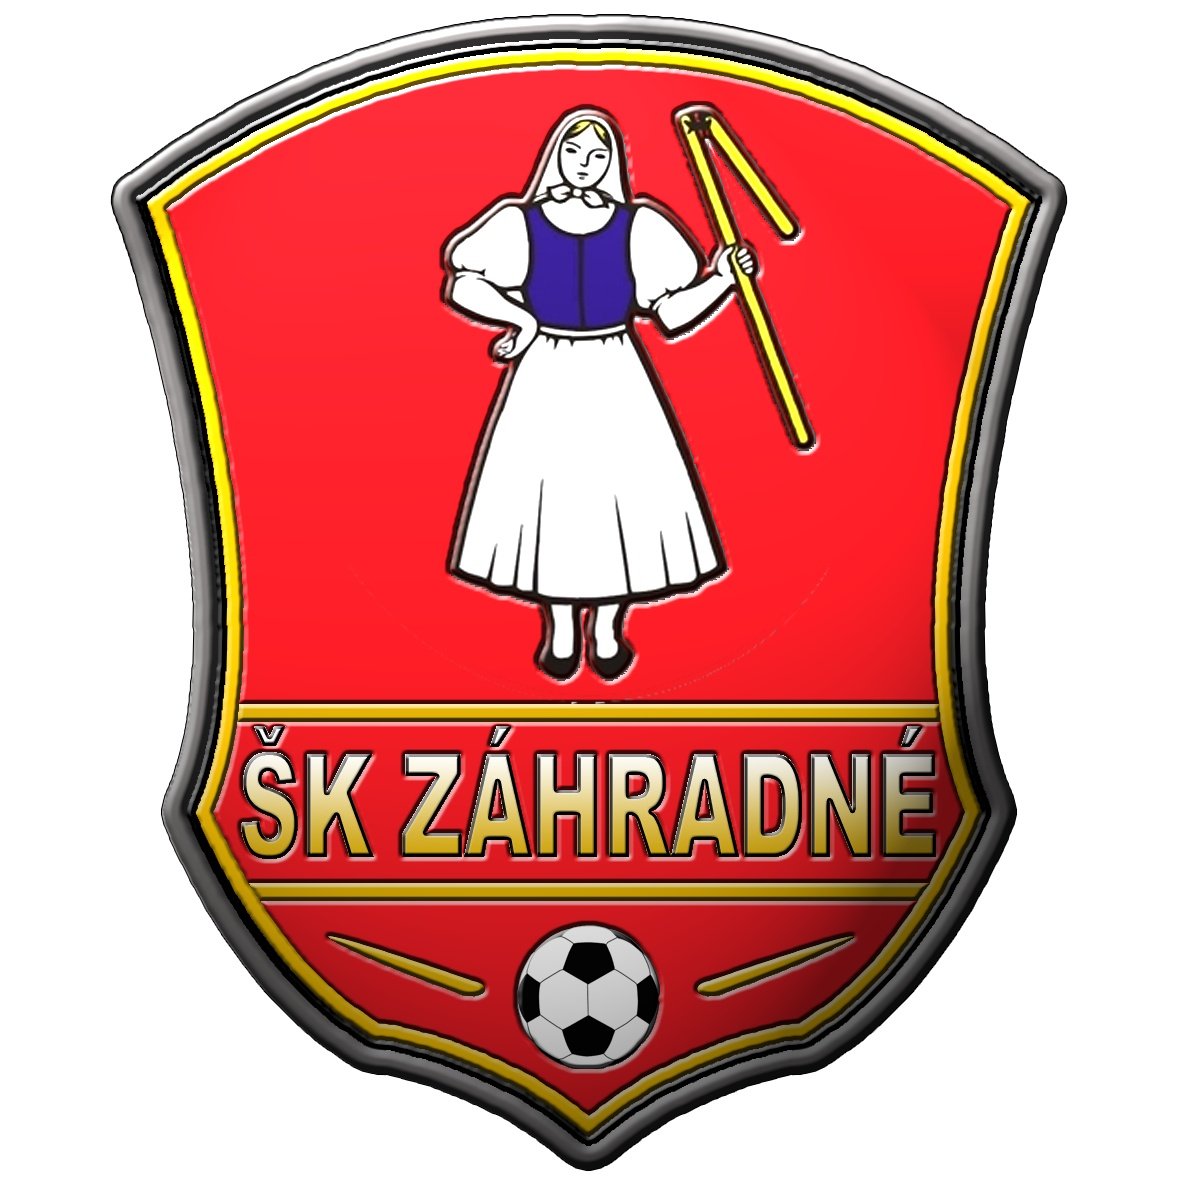 SK Zahradne